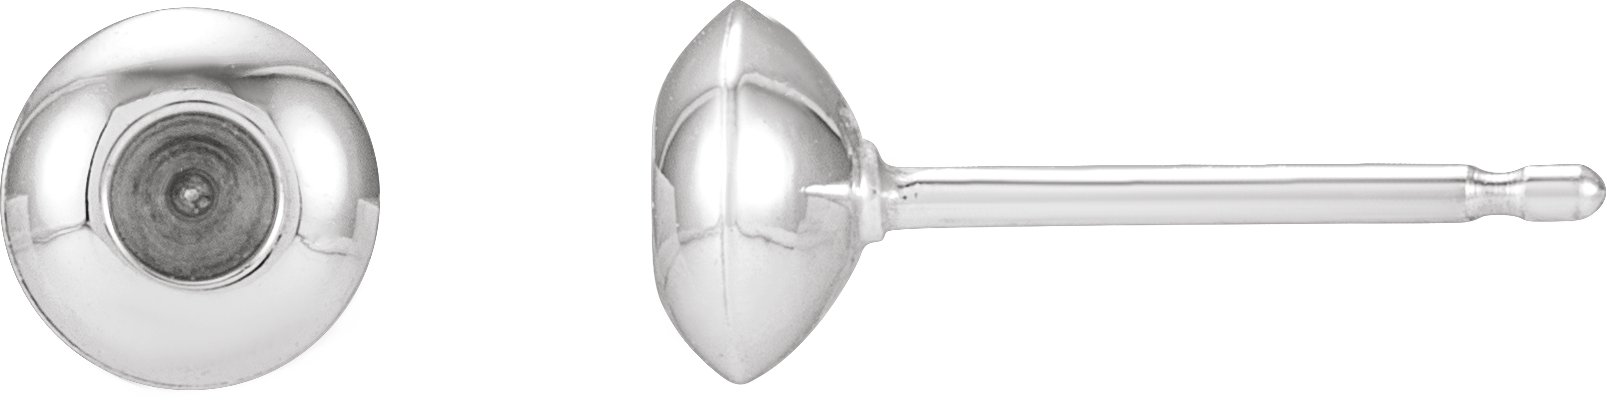 14K White 2.5 mm Round Domed Bezel-Set Earring Mounting